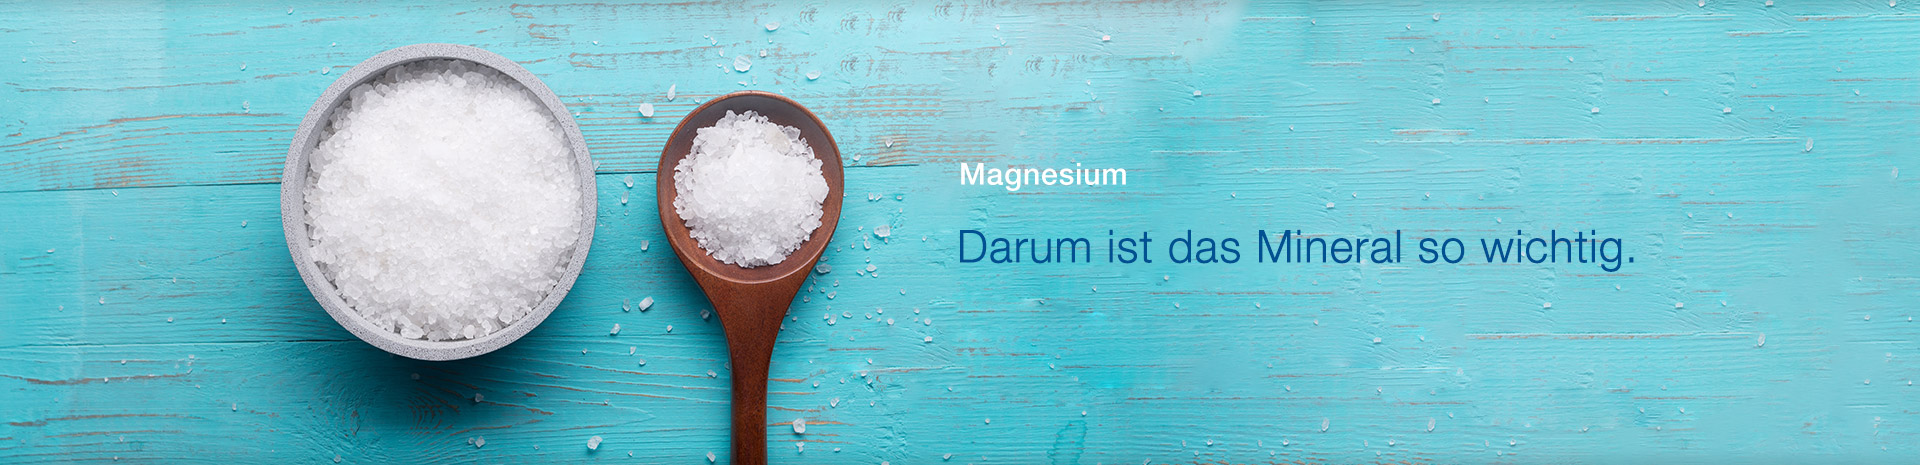 Magnesium - Warum ist das Mineral so wichtig 